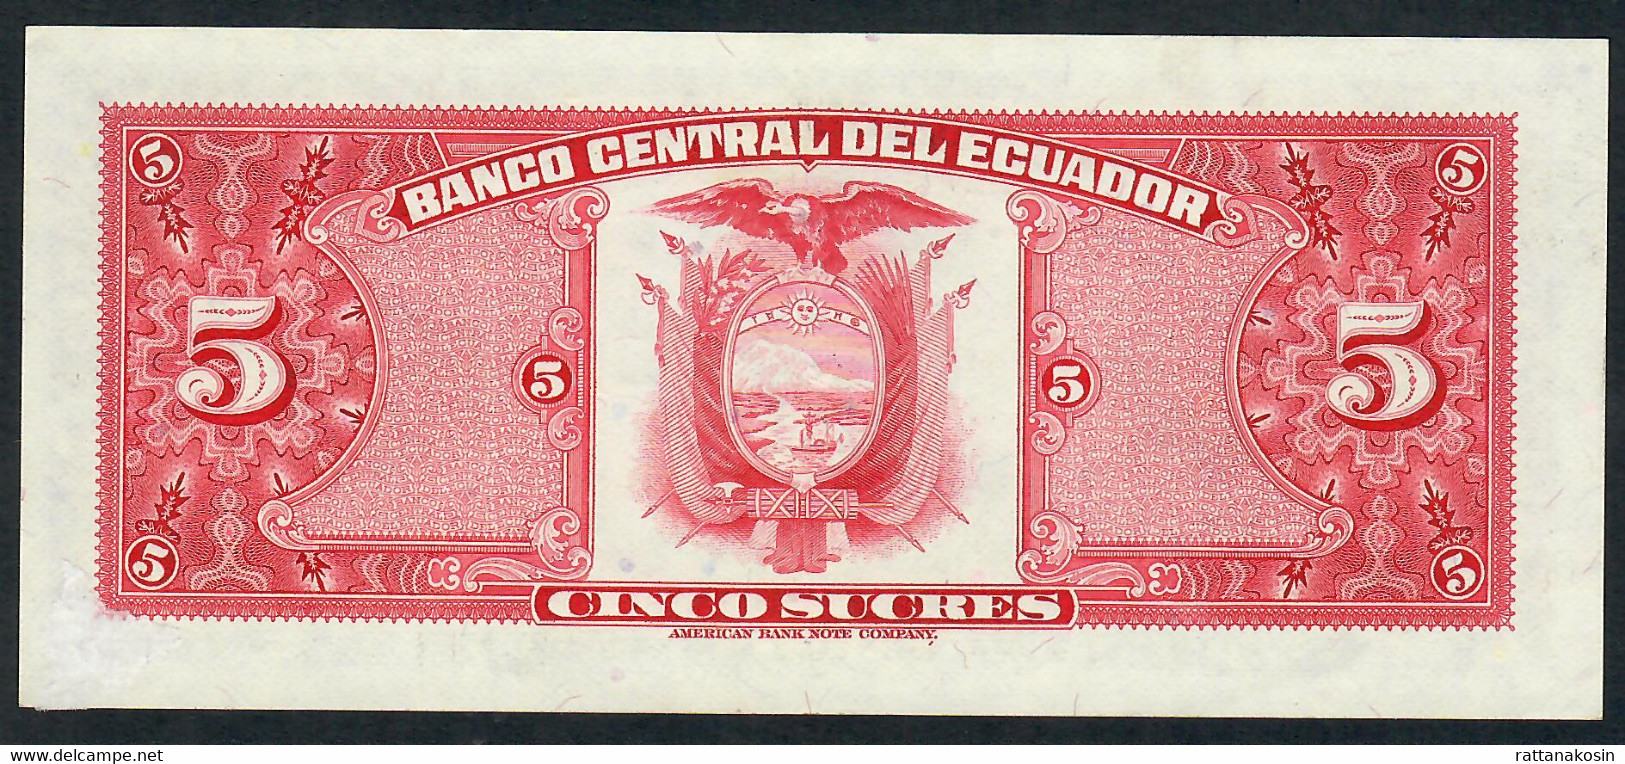 ECUADOR  P108b  5  SUCRES  20.4.1983  ABNC # HY      XF-AU - Ecuador